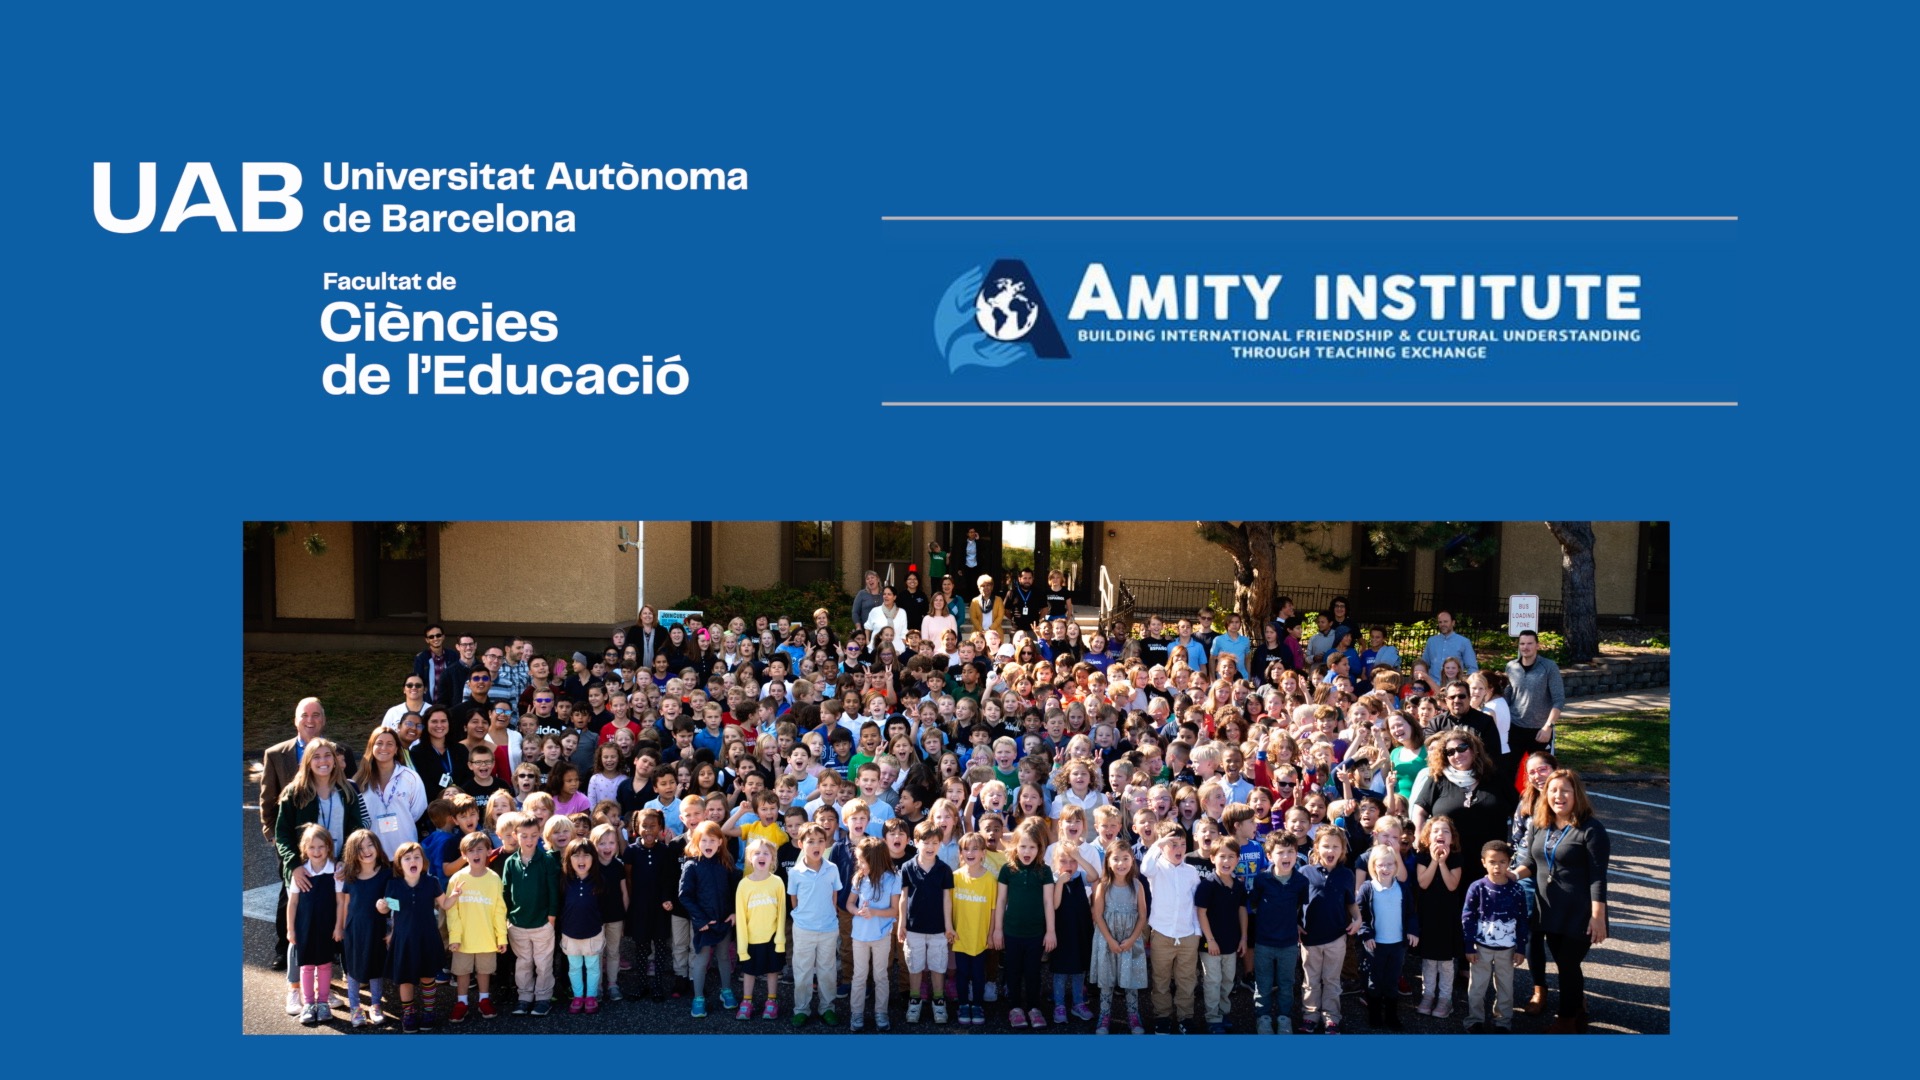 Imatges on es poden veure imatges del programa Amity